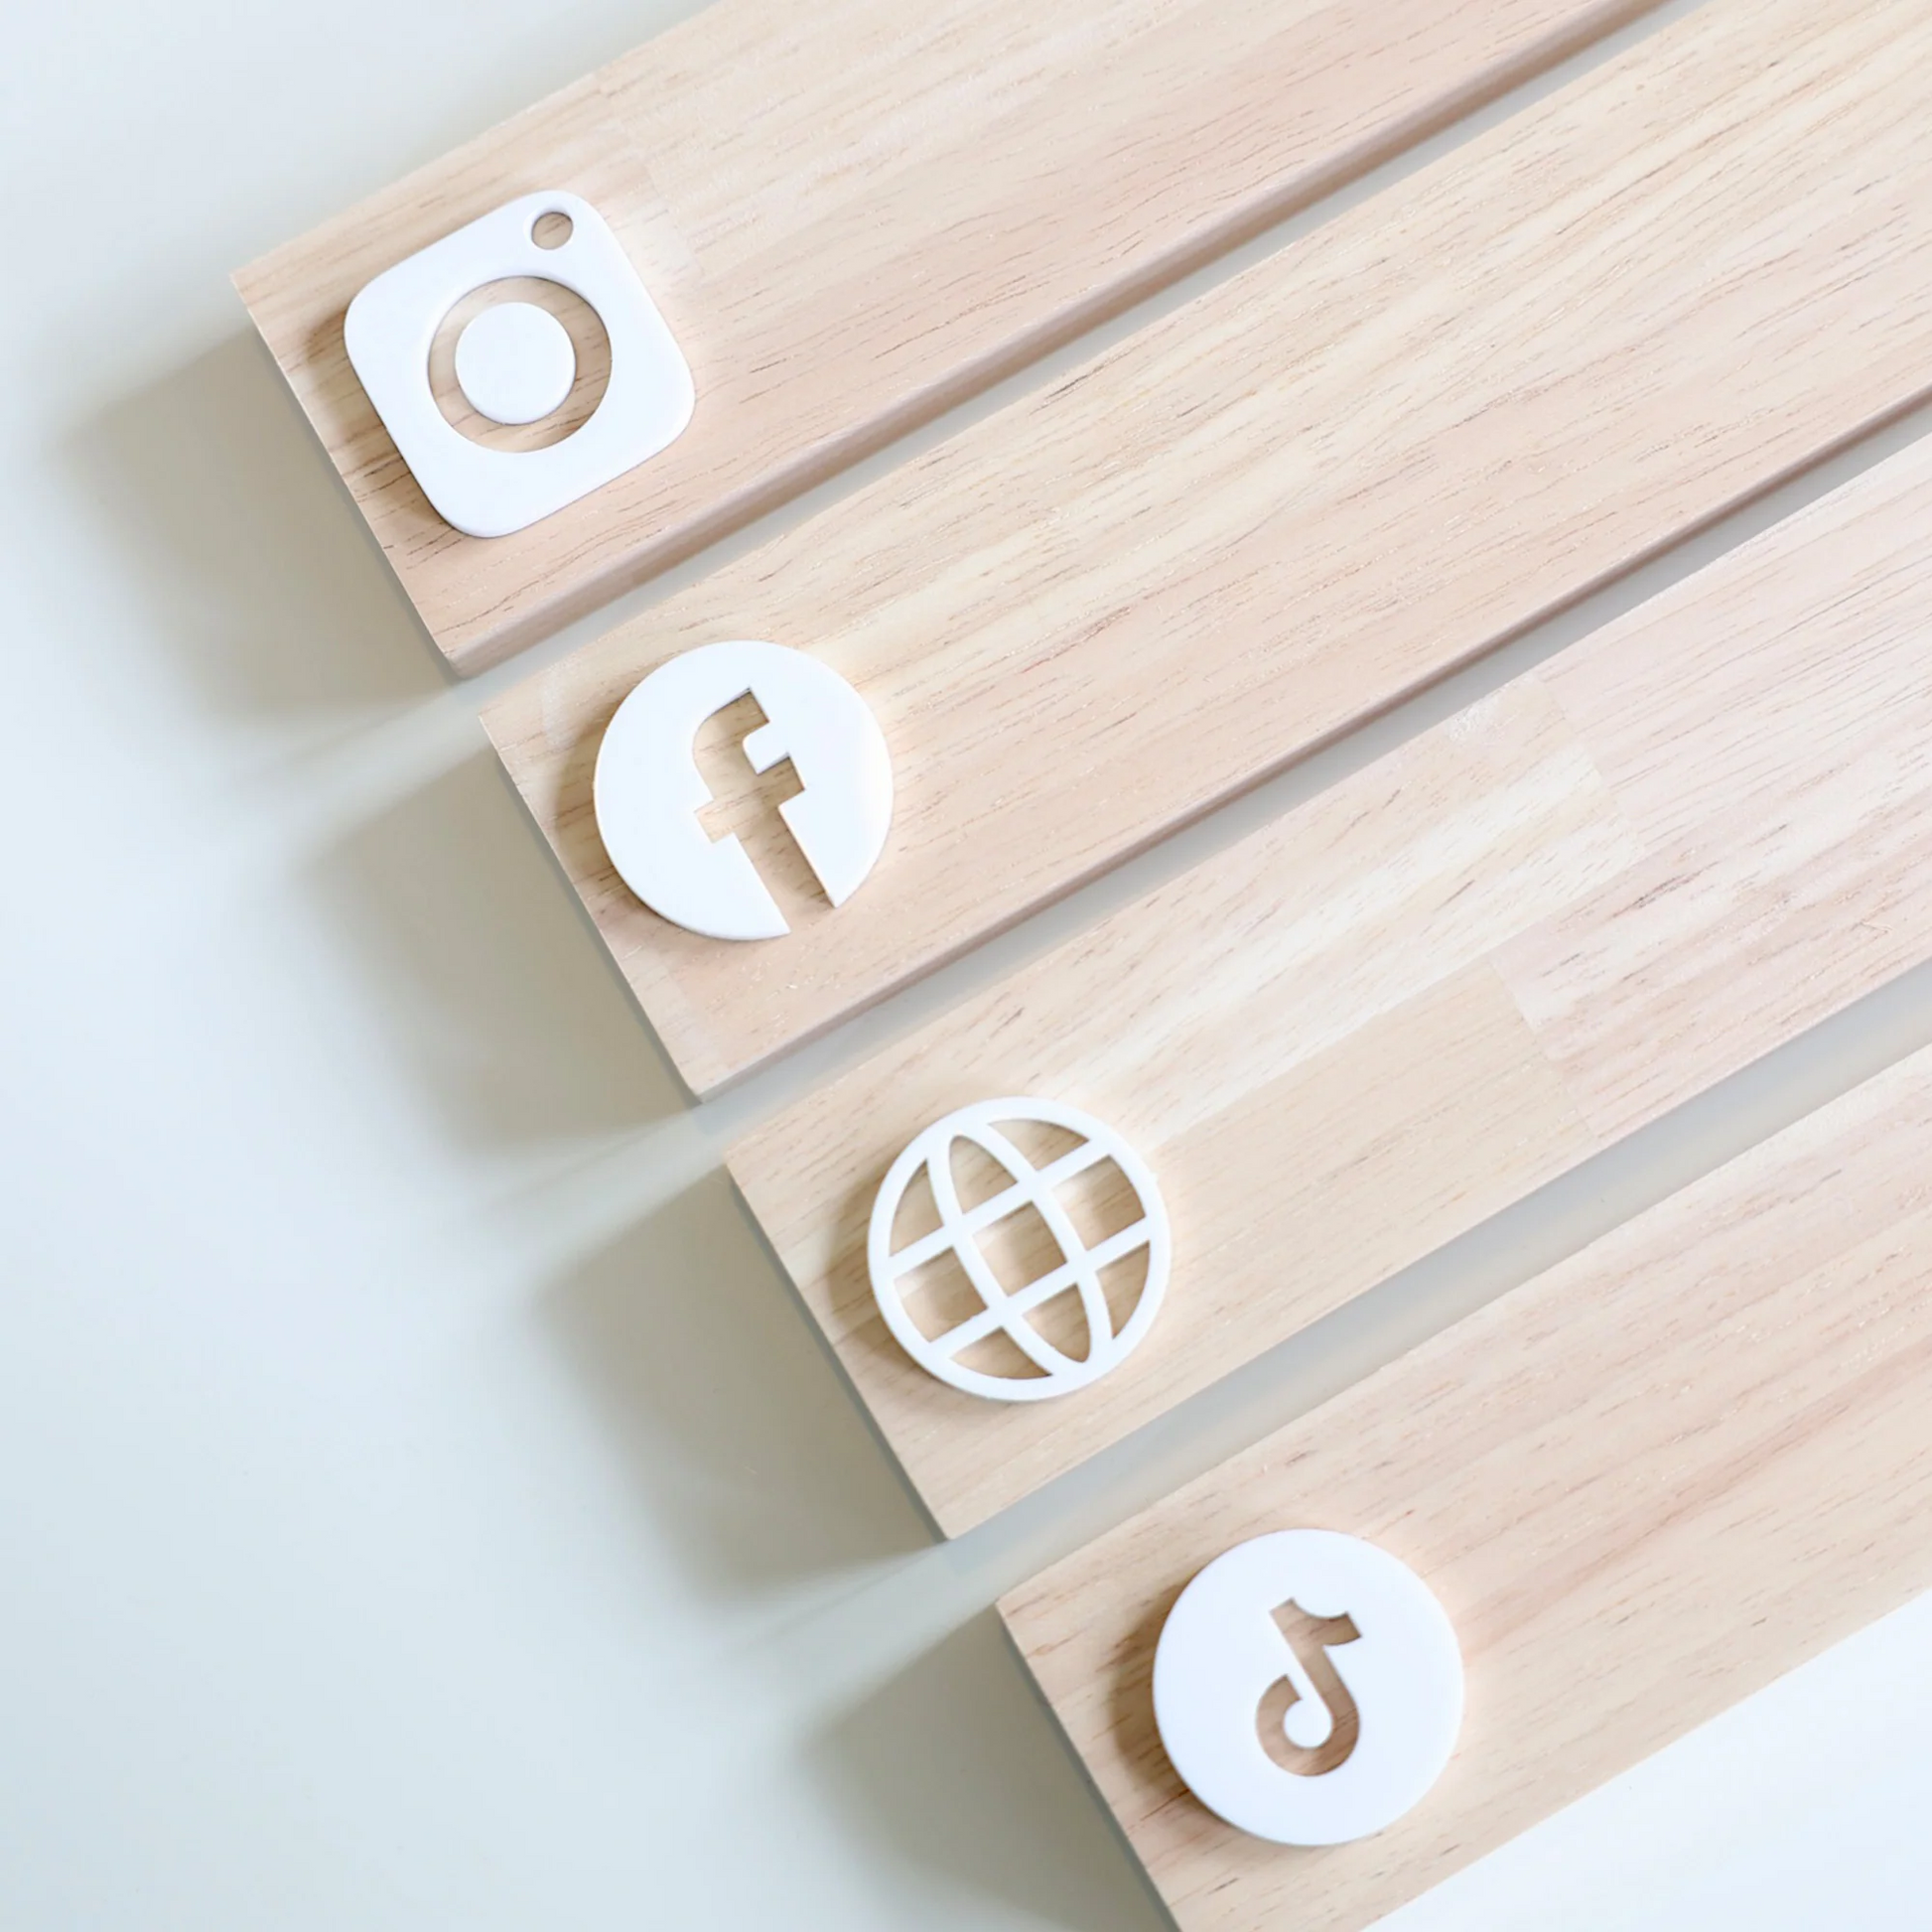 Présentoirs réseaux sociaux en bois pour les marques et profesionnels